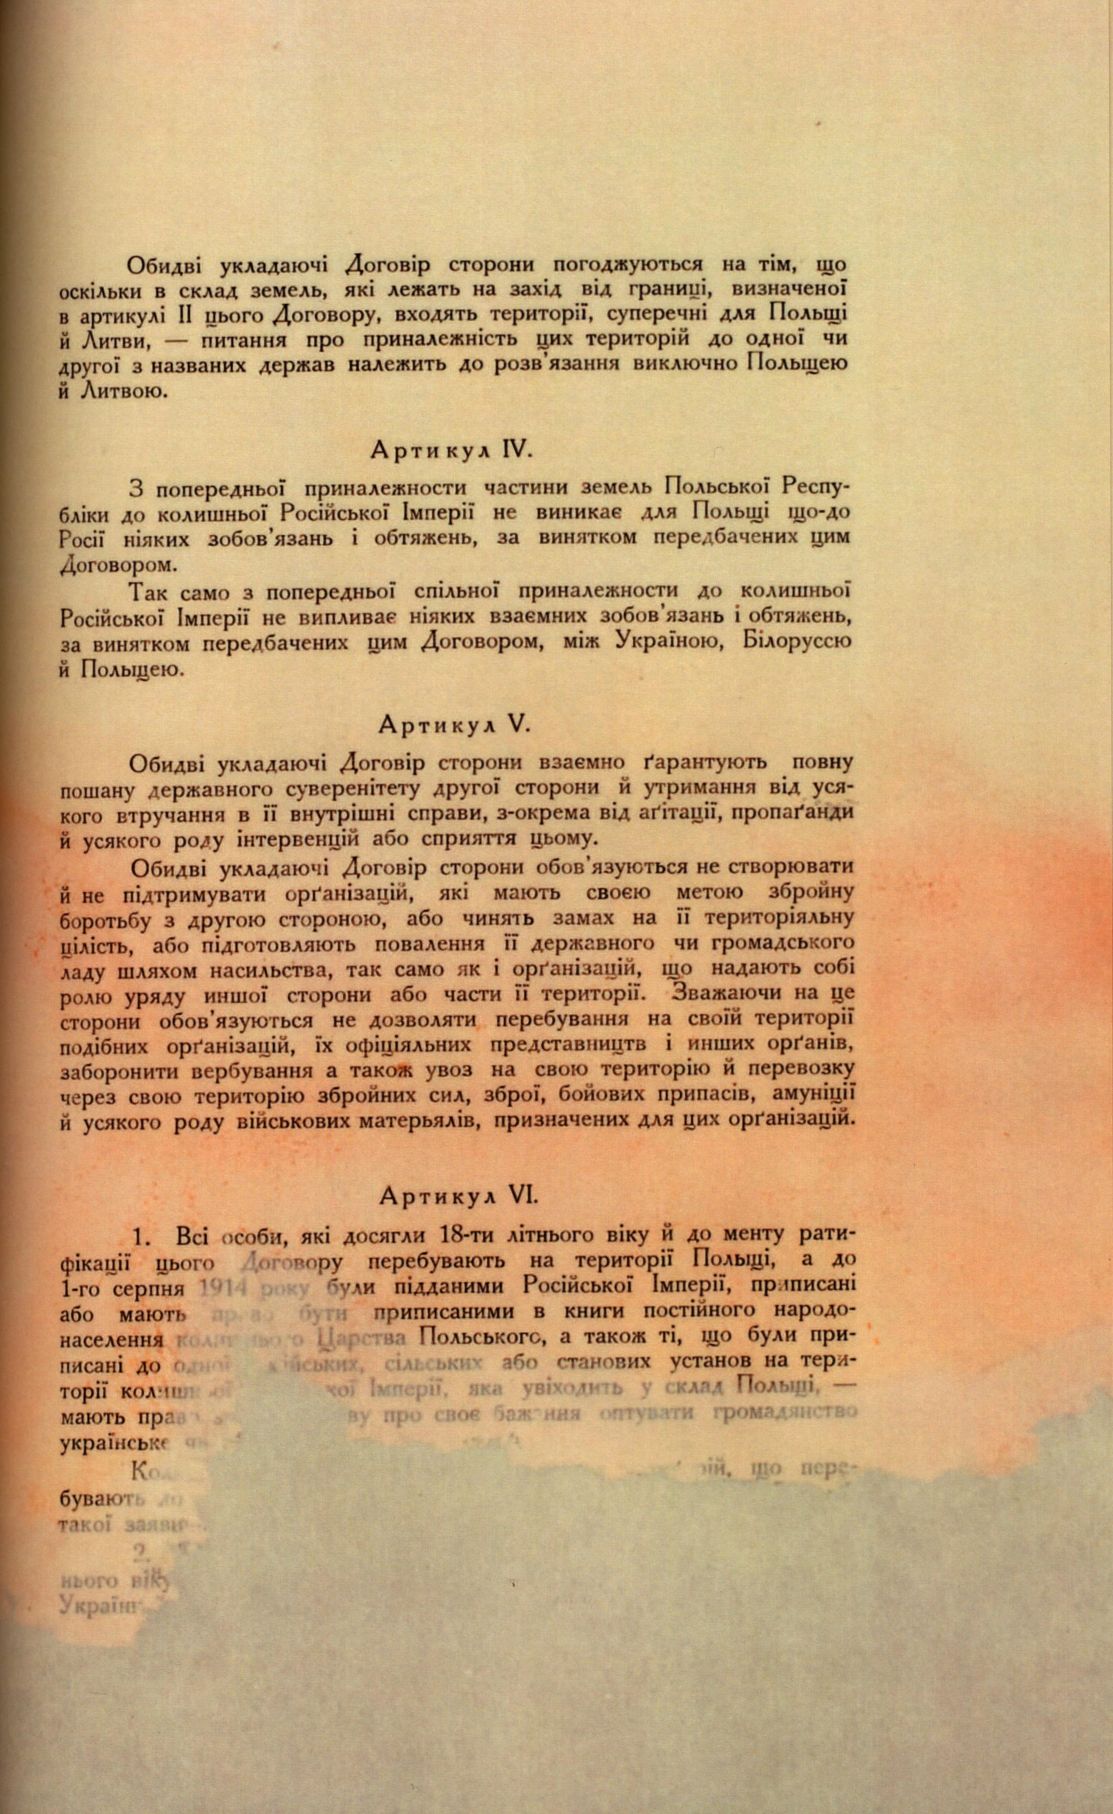 Traktat Pokoju między Polską a Rosją i Ukrainą podpisany w Rydze dnia 18 marca 1921 roku, s. 39, MSZ, sygn. 6739.